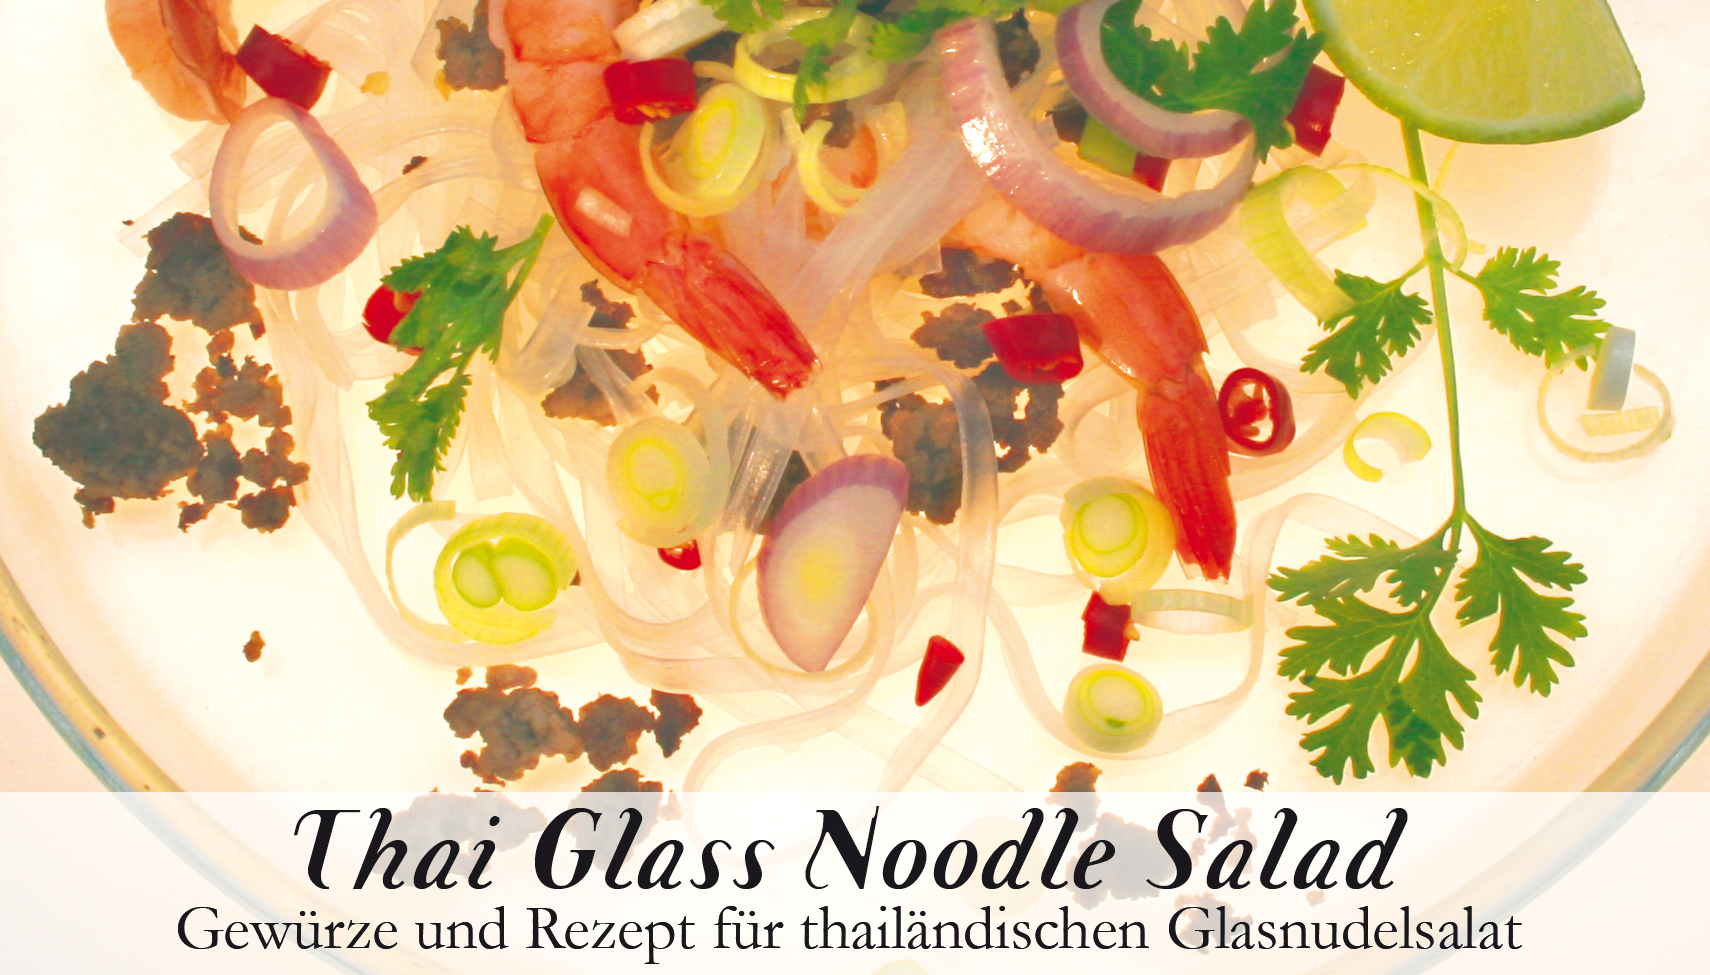 Thai Glass Noodle Salad-Gewürzkasten